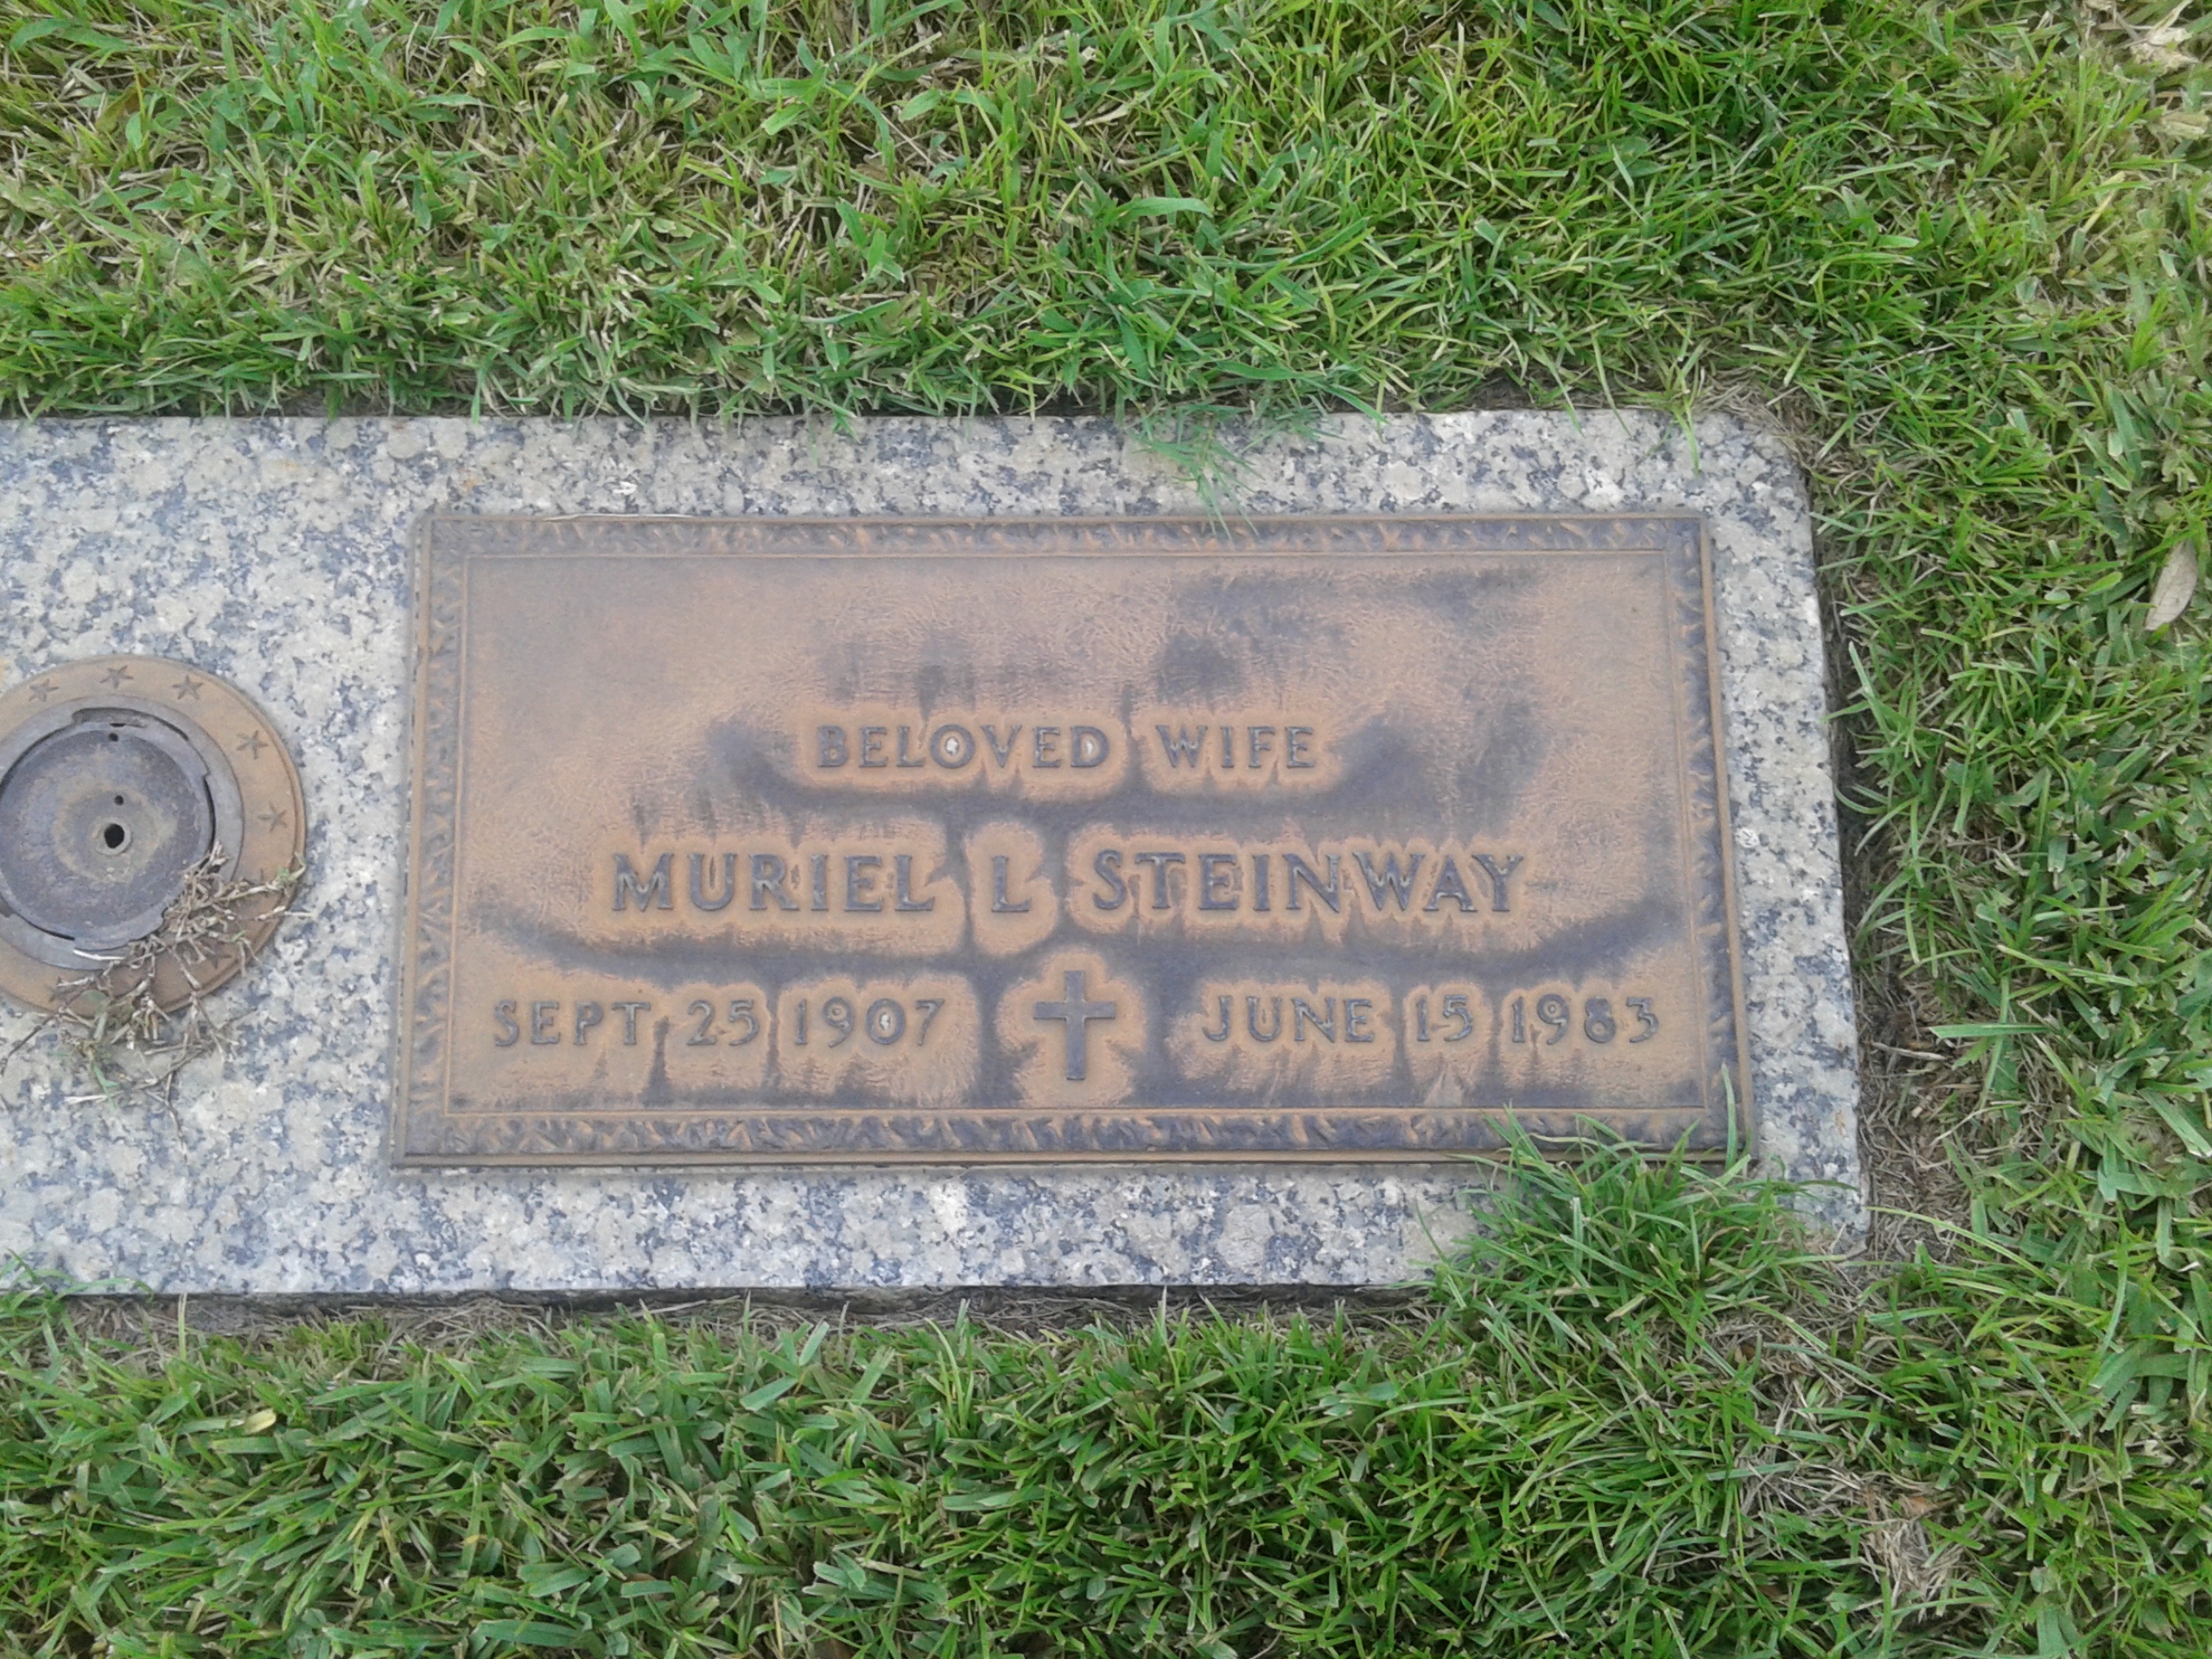 Muriel L Steinway